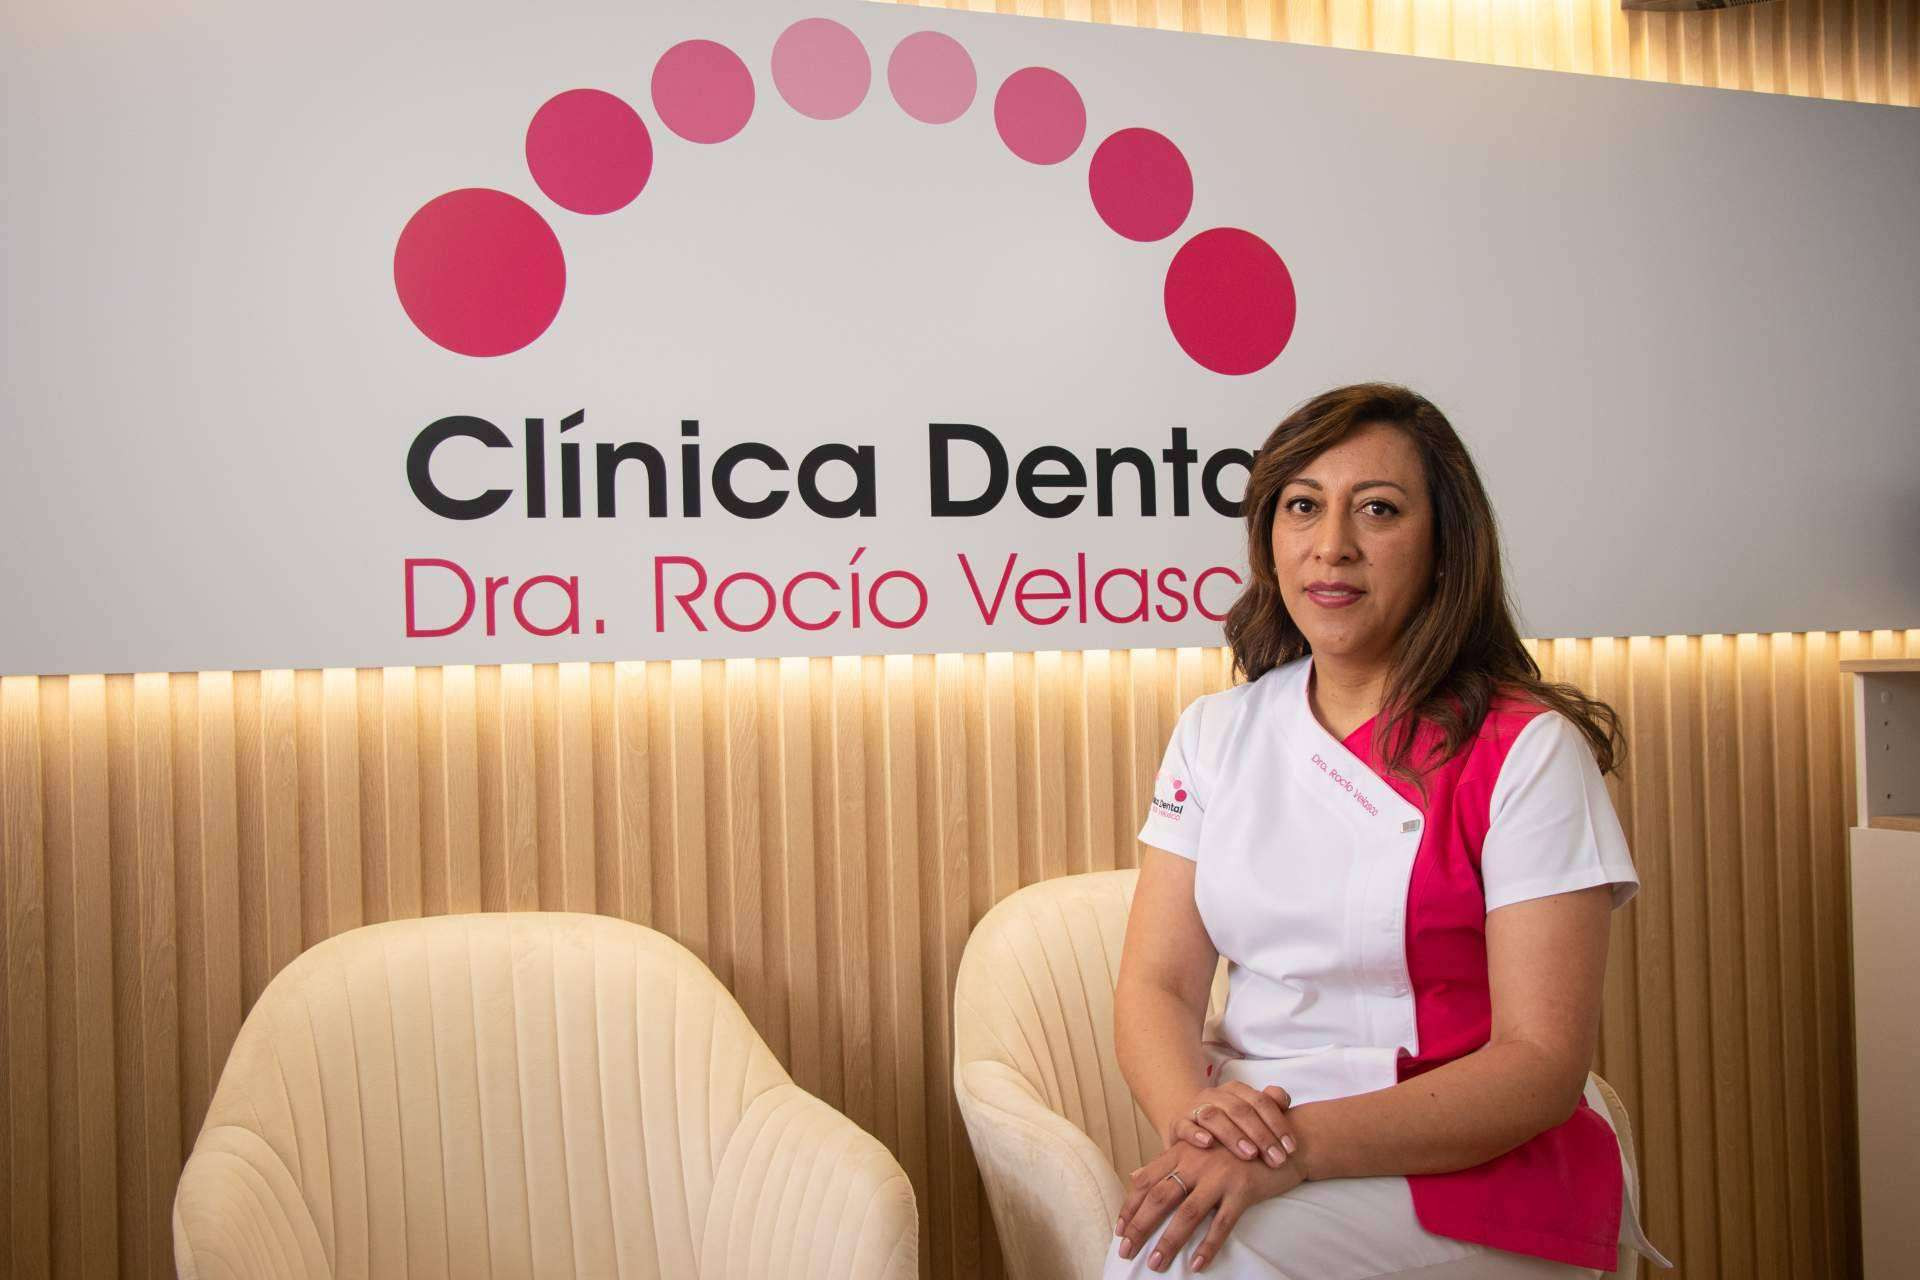  Rehabilitación total con implantes o prótesis de la mano de Clínica Dental Rocío Velasco 